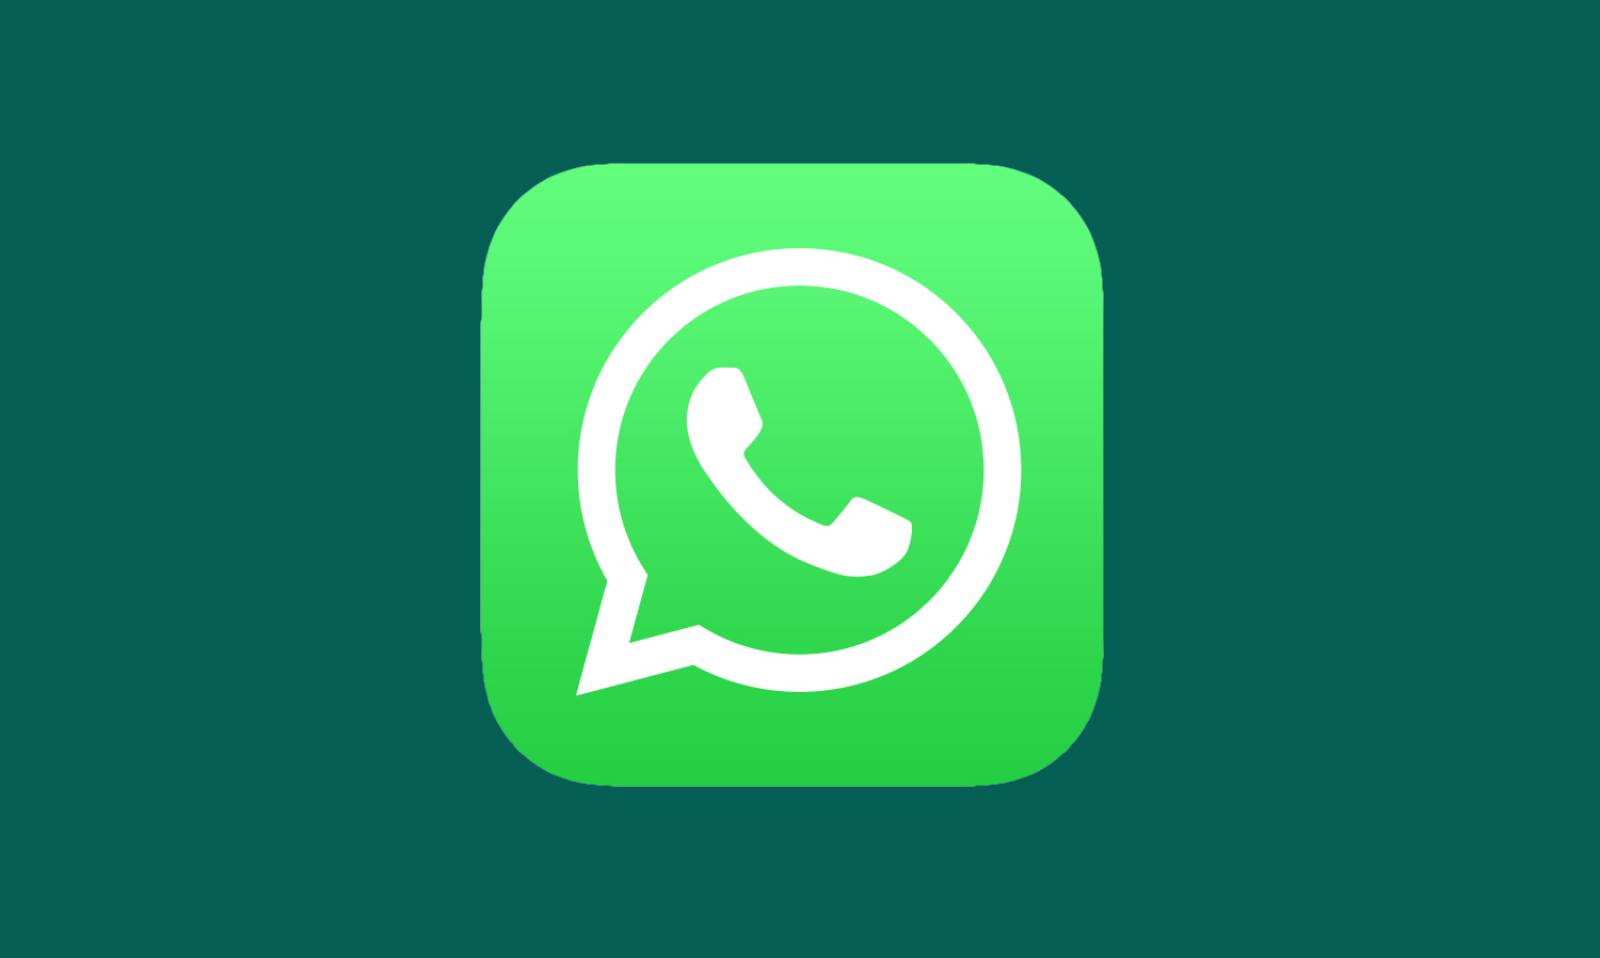 WhatsApp tones